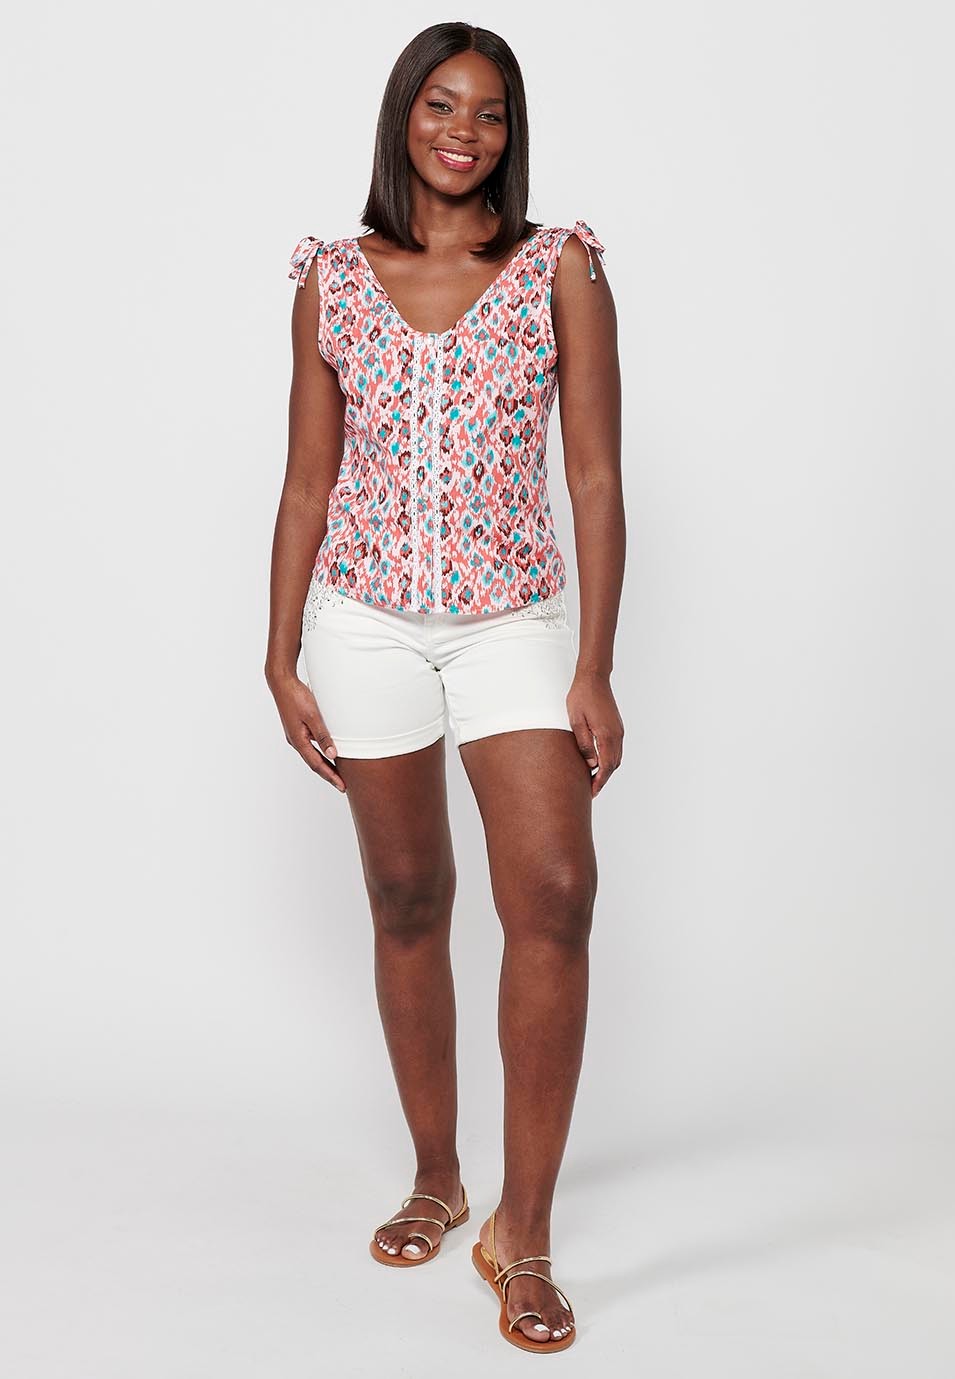 Damen-Bluse mit mehrfarbigem geometrischem Aufdruck, V-Ausschnitt und Kordelzug am Rücken, faltig, breite Träger 3